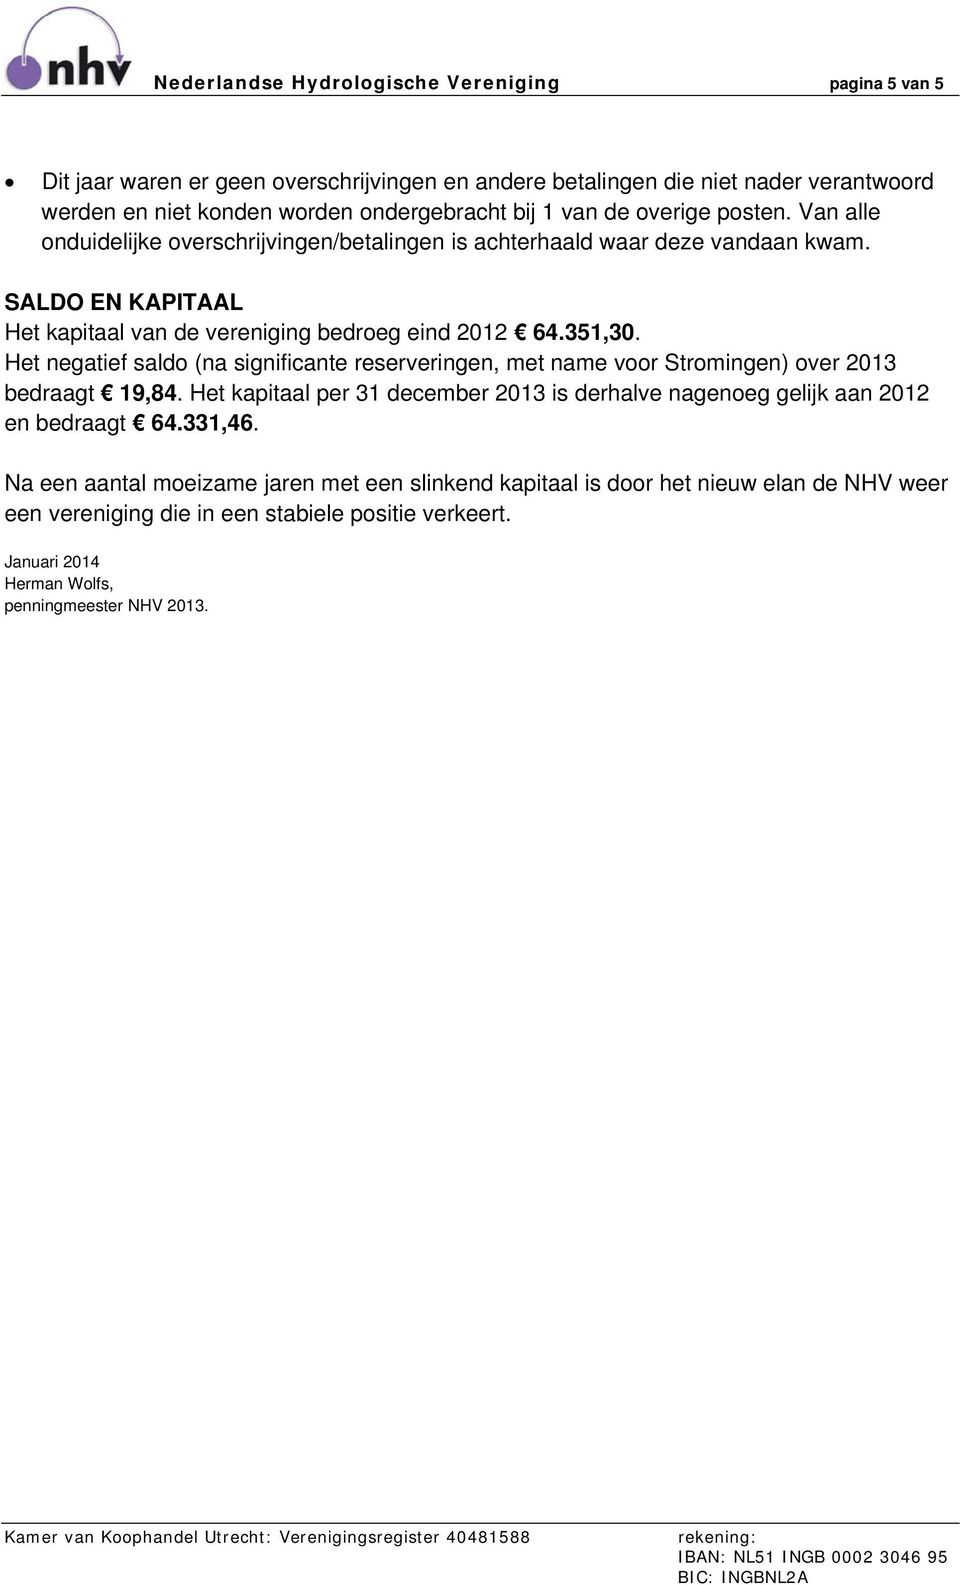 Het negatief saldo (na significante reserveringen, met name voor Stromingen) over 2013 bedraagt 19,84. Het kapitaal per 31 december 2013 is derhalve nagenoeg gelijk aan 2012 en bedraagt 64.